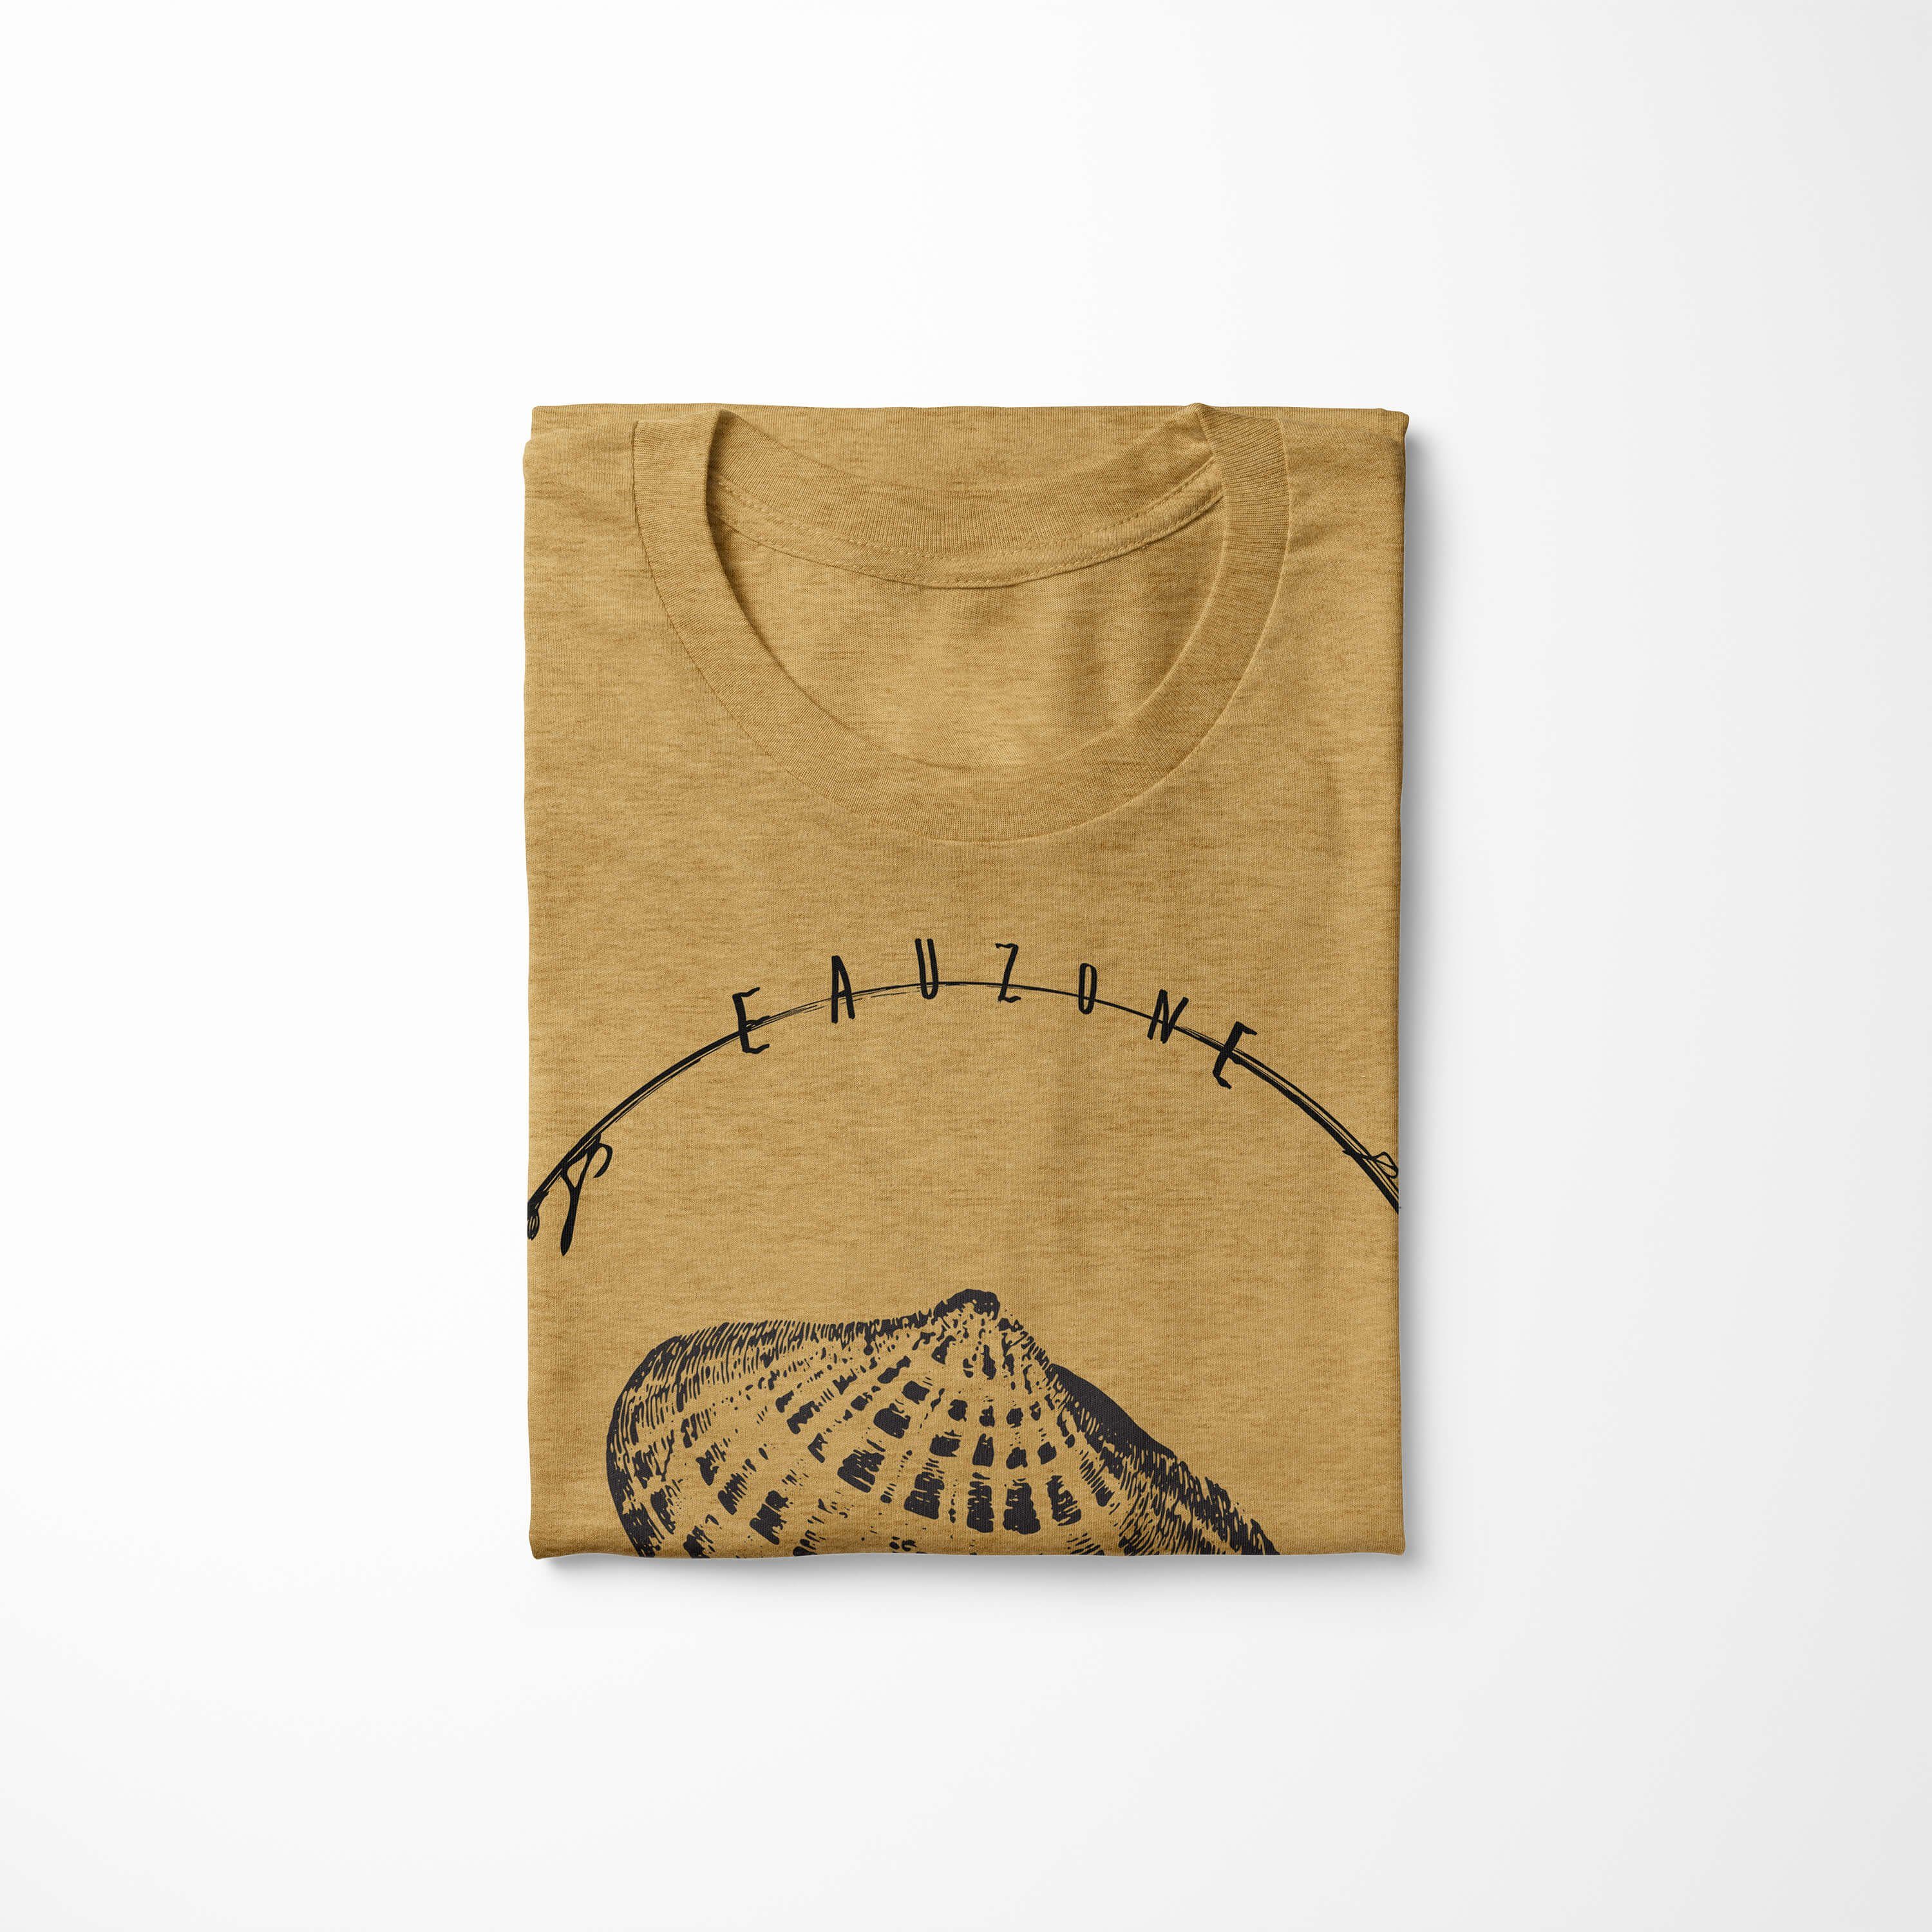 Gold Struktur Art und T-Shirt / Creatures, feine sportlicher Sea Sinus Tiefsee Antique Sea Serie: 033 - Schnitt T-Shirt Fische